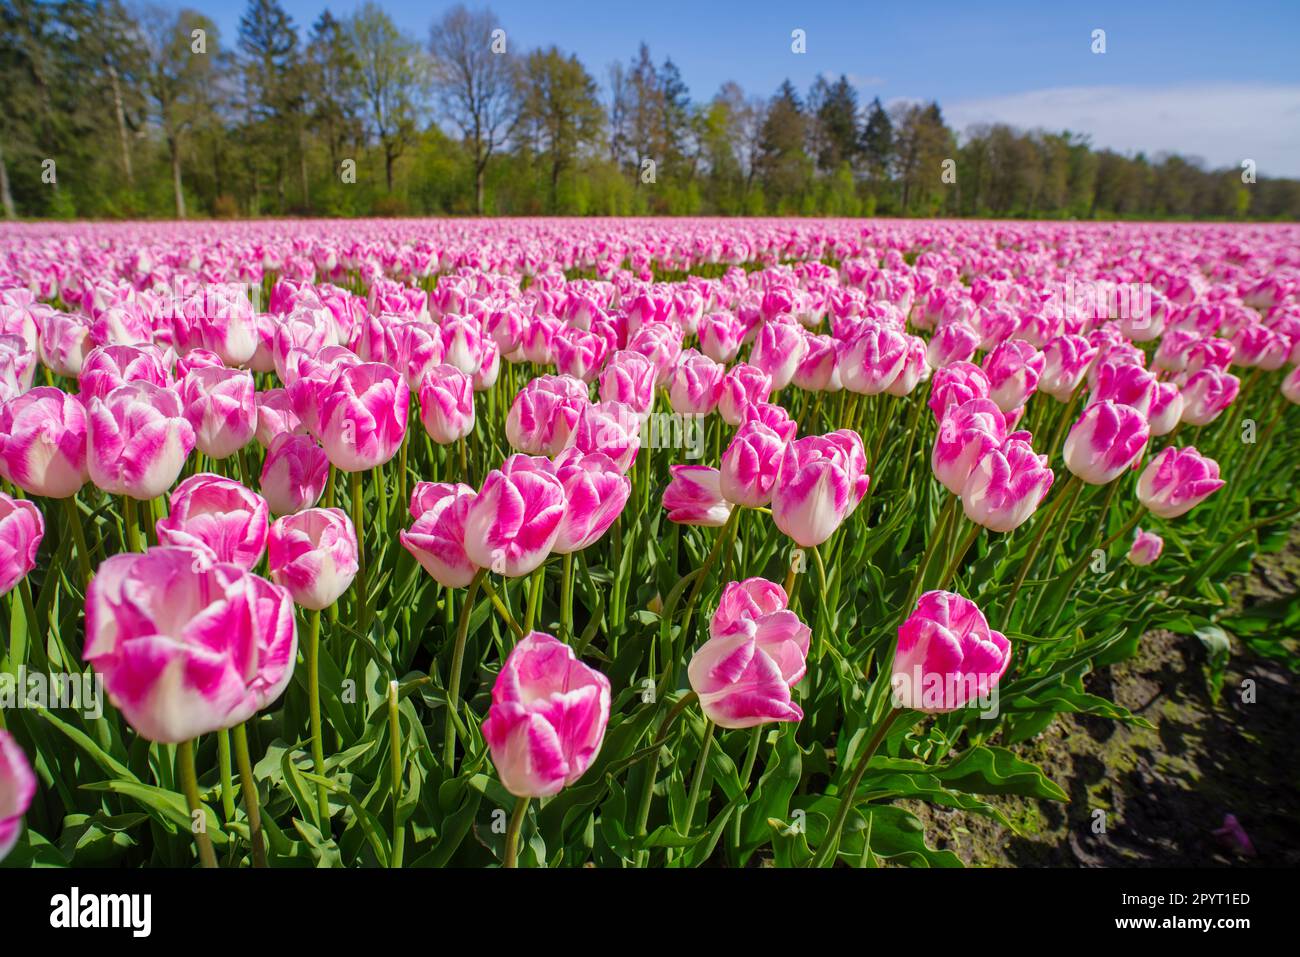 magnifique champ de tulipes roses en fleurs aux pays-bas Banque D'Images